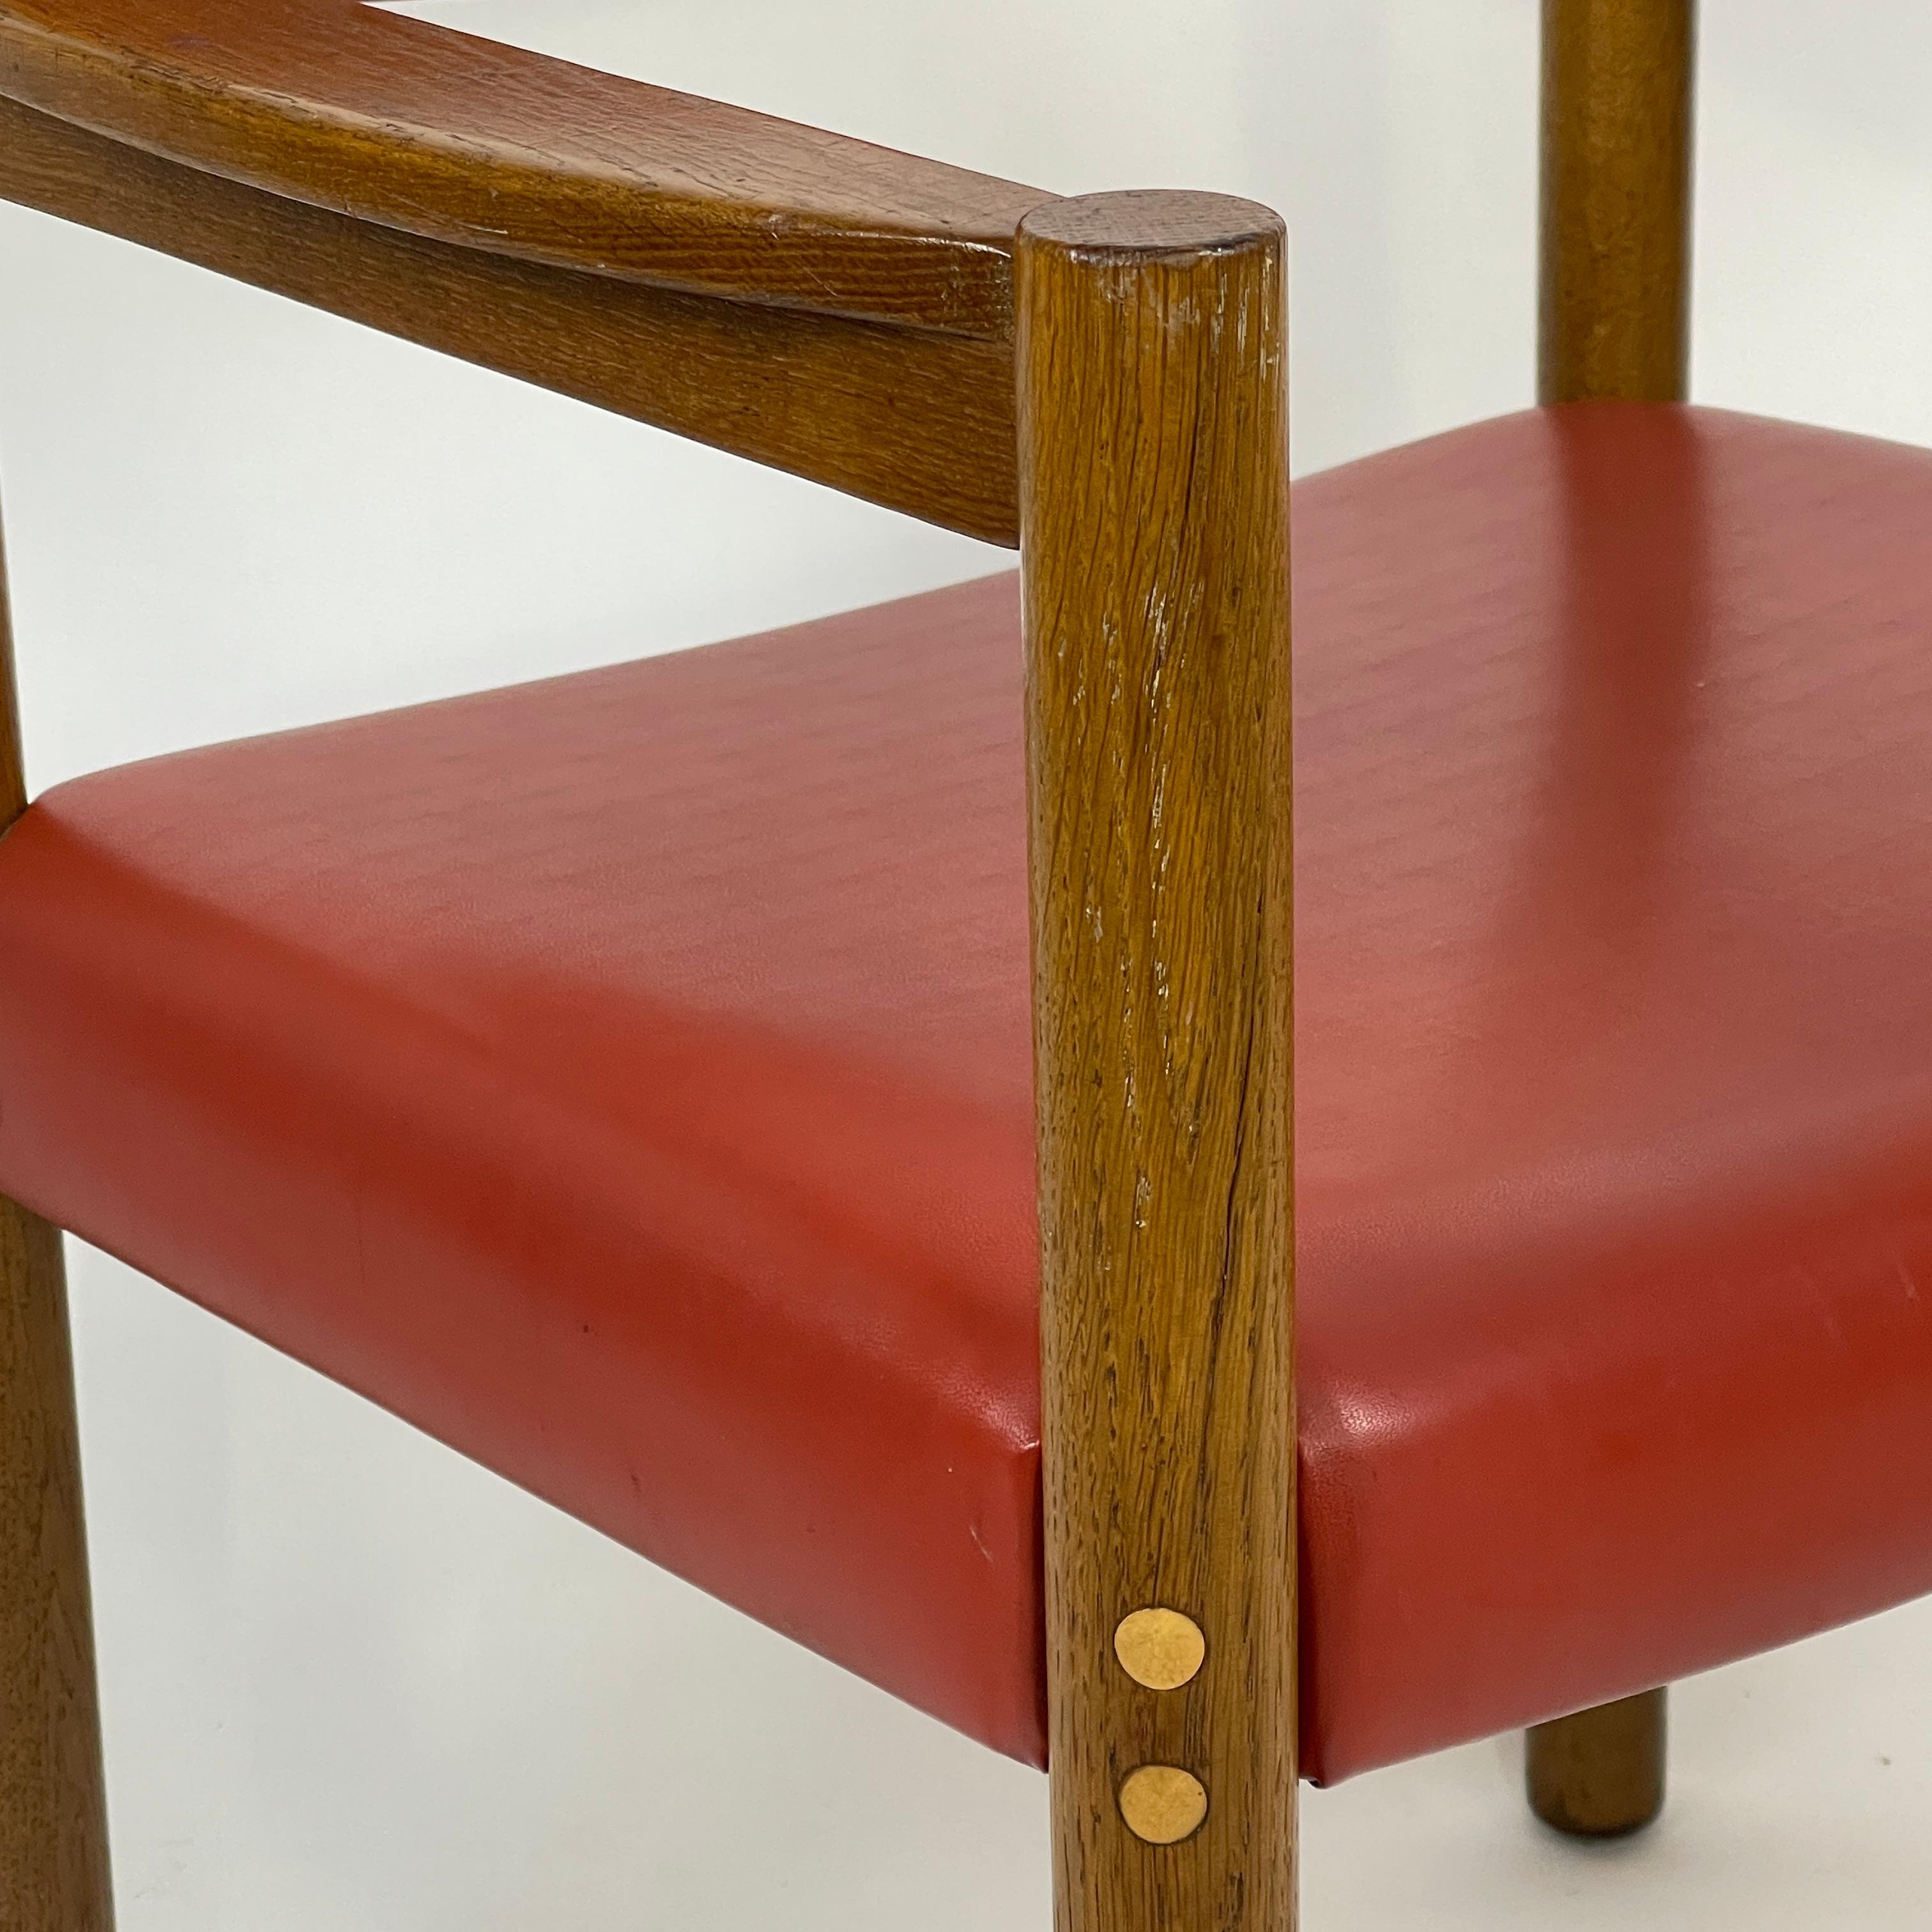 Rare fauteuil conçu par Harvey Probber et provenant de la maison et de la collection personnelle de Probber. Il s'agit d'un fauteuil de base probablement conçu plus tard en raison du design plus postmoderne de la chaise. Le cadre est en chêne massif